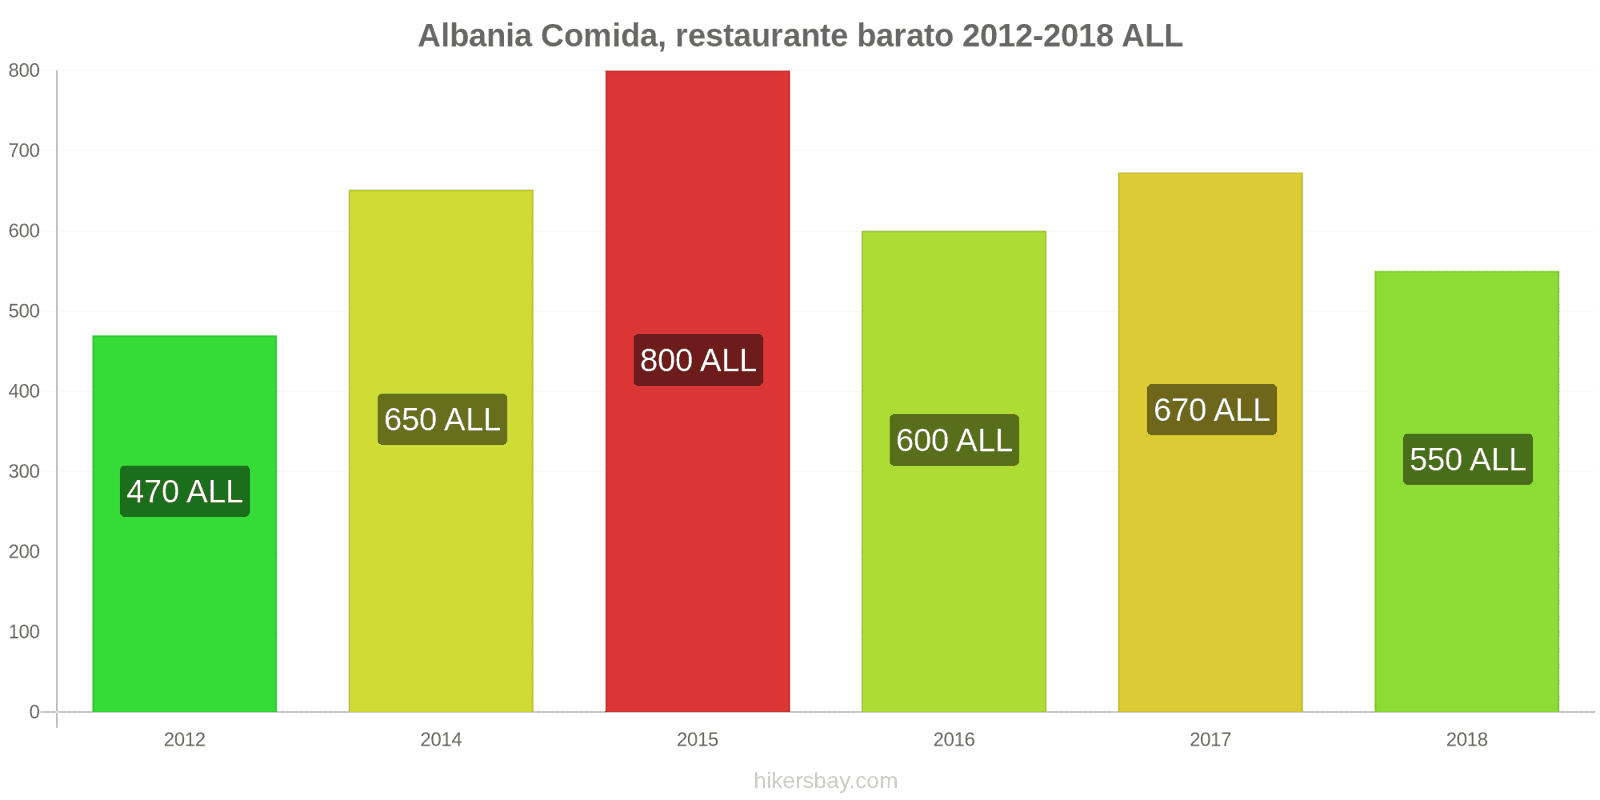 Albania cambios de precios Comida en un restaurante económico hikersbay.com